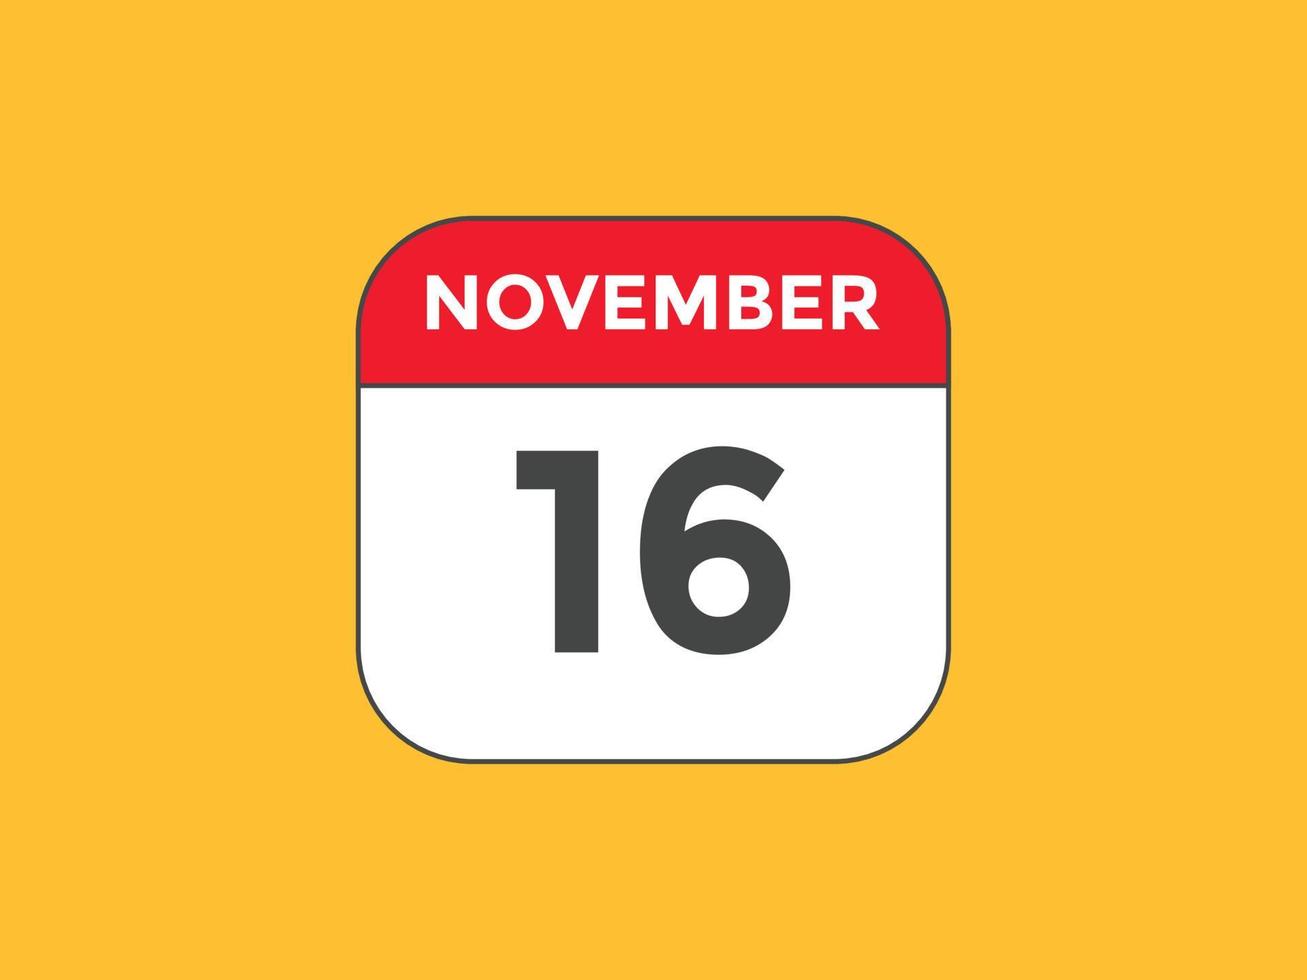 novembre 16 calendario promemoria. 16 ° novembre quotidiano calendario icona modello. calendario 16 ° novembre icona design modello. vettore illustrazione